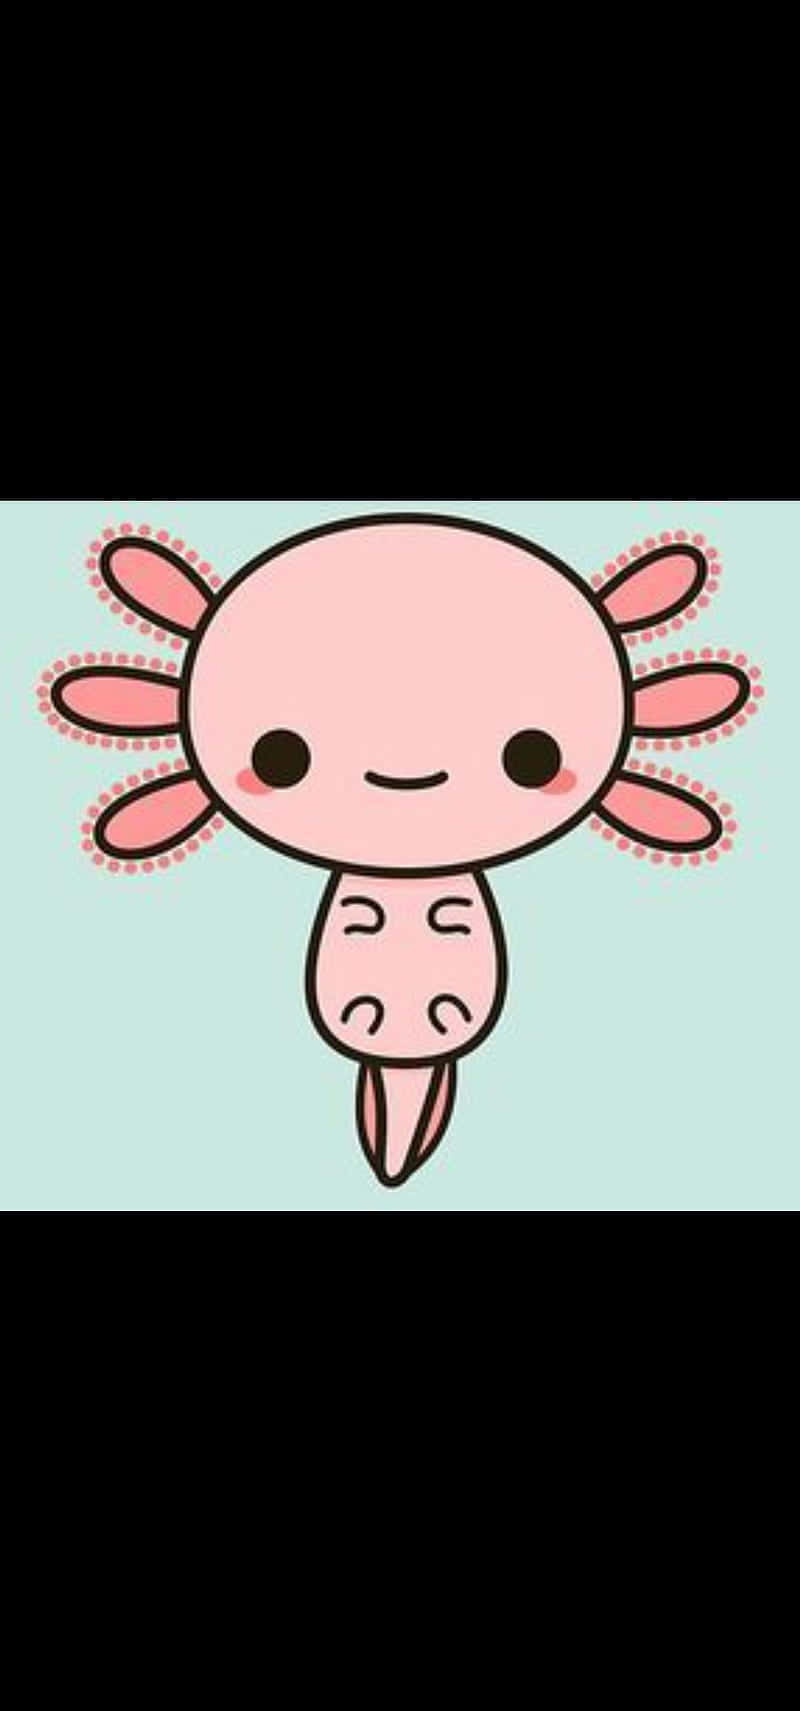 Pink Cute Axolotl Digital Illustration Wallpaper